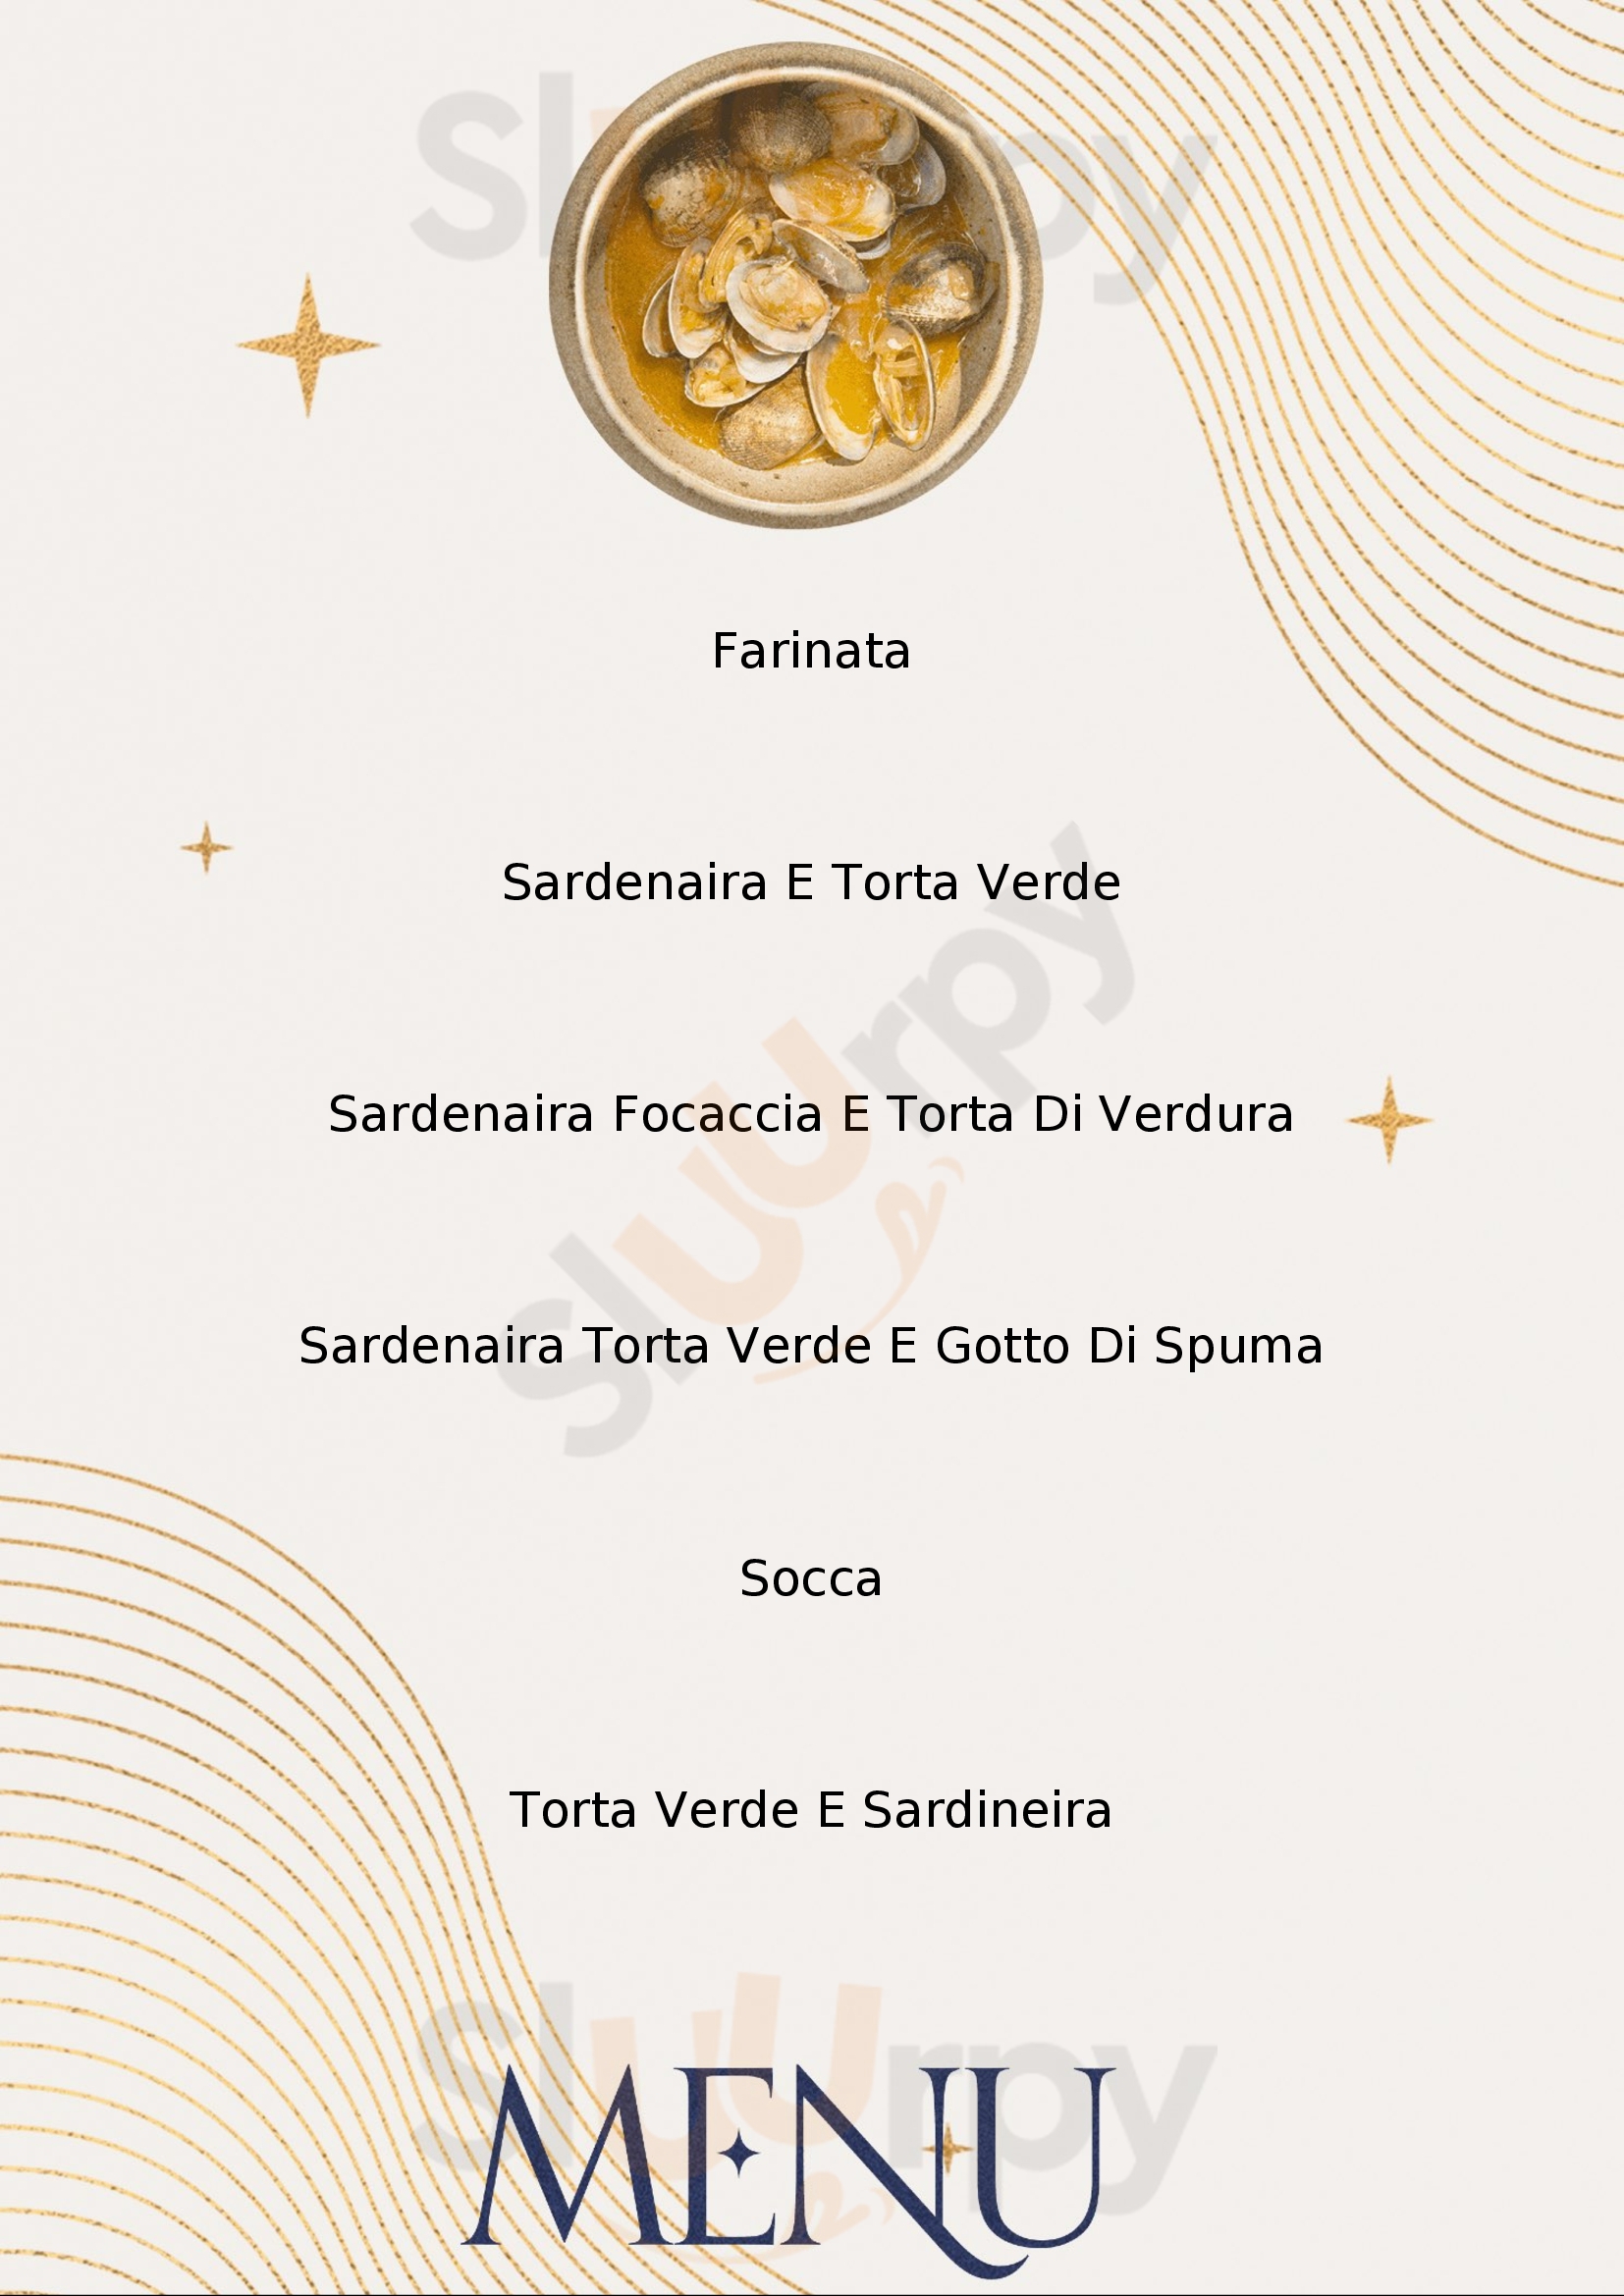 La Tavernetta Sanremo menù 1 pagina